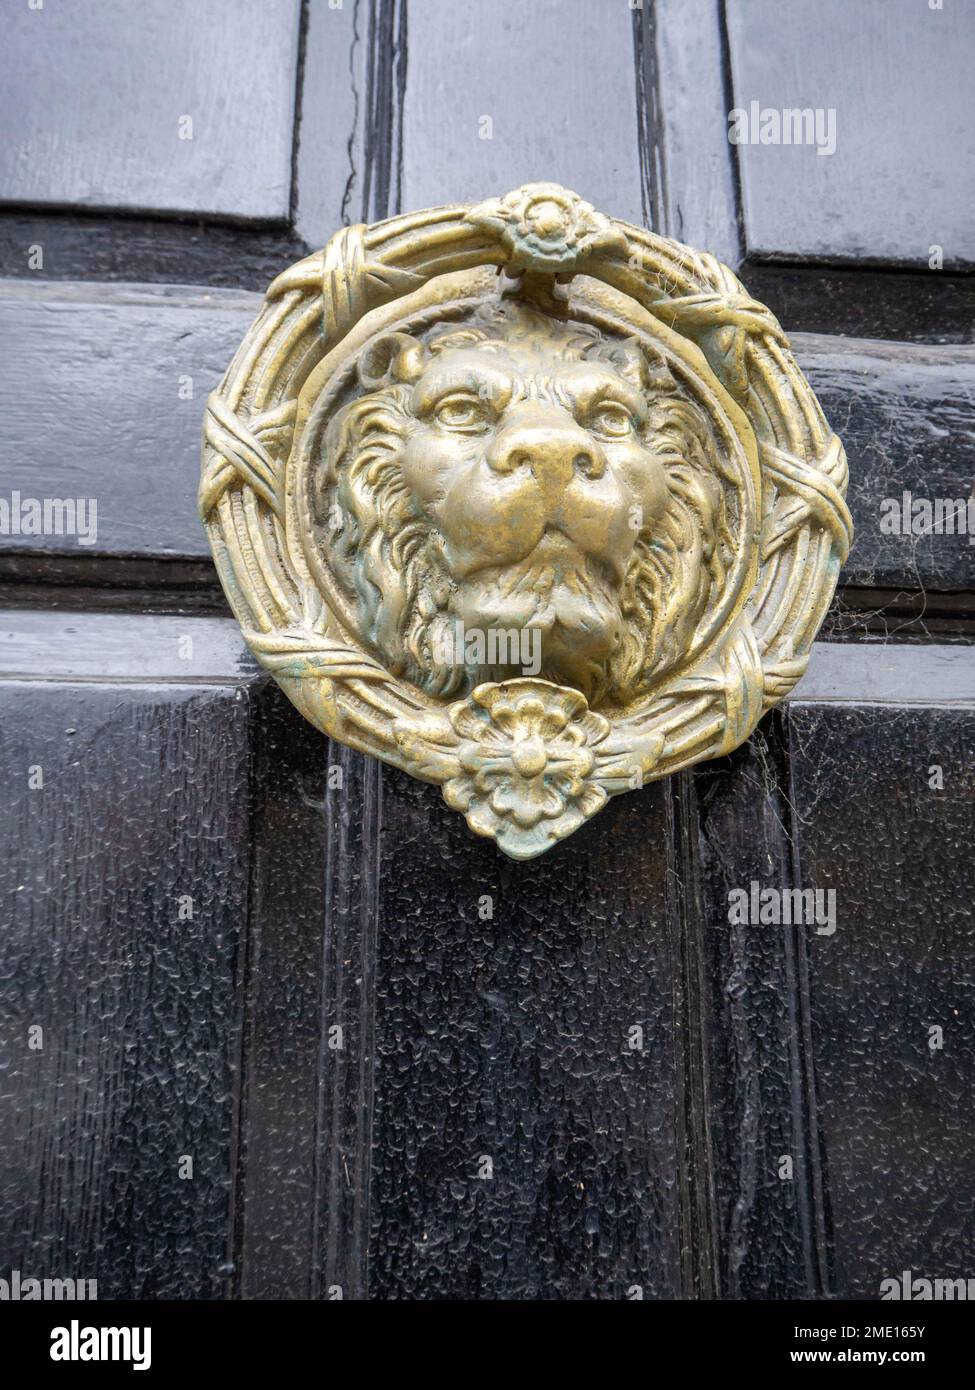 Historical style door furniture, round brass lions head circular door knocker on a black wooden door Stock Photo